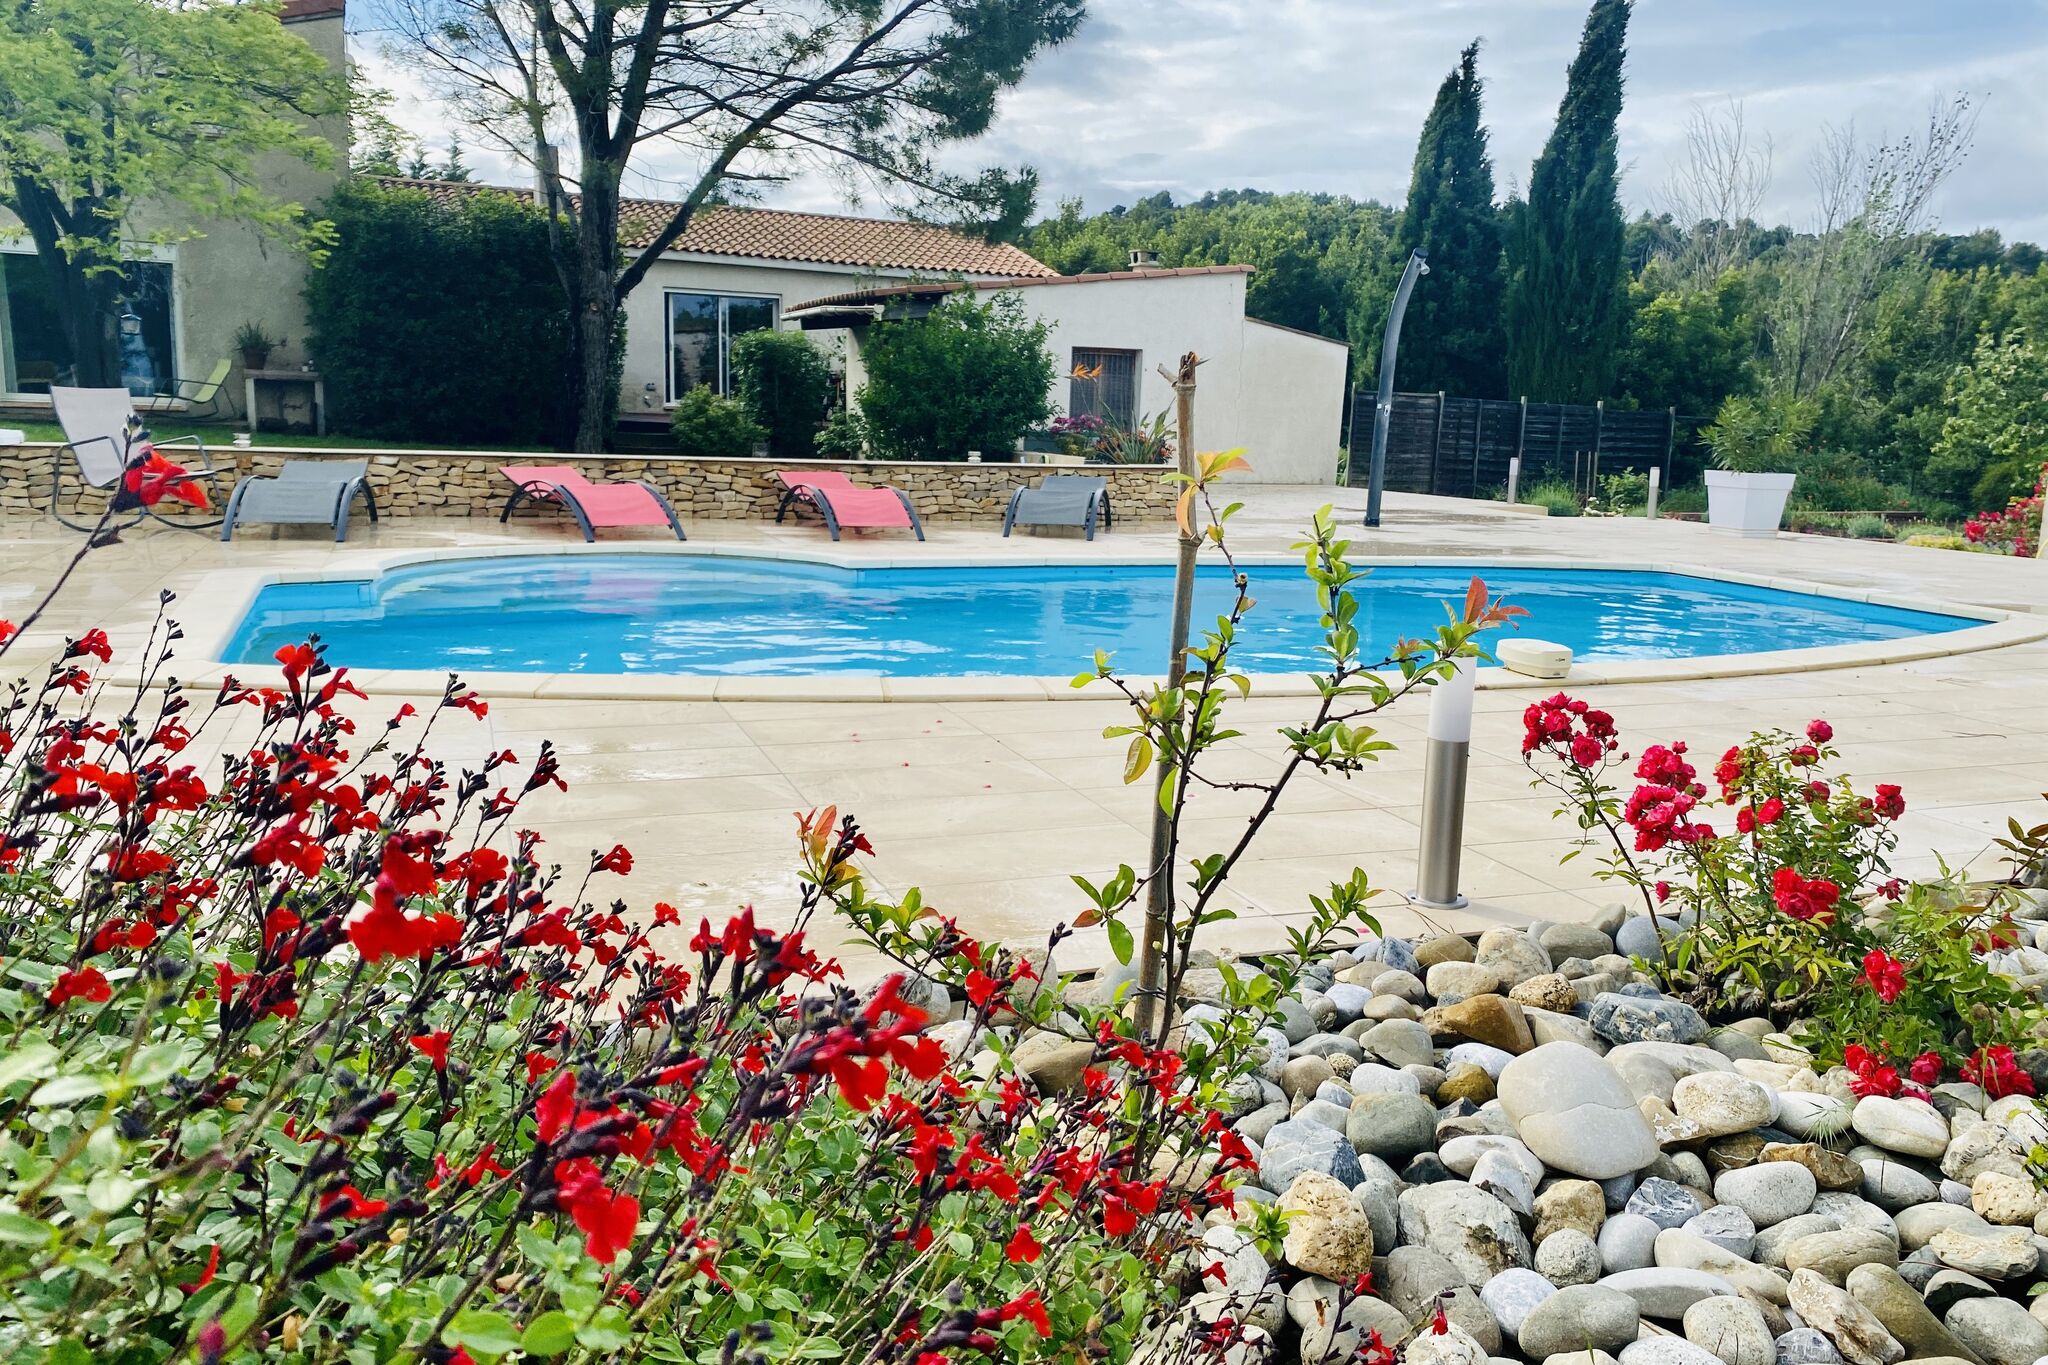 Villa mit Pool und eingezäuntem Garten zwischen Weinbergen und Wanderwegen